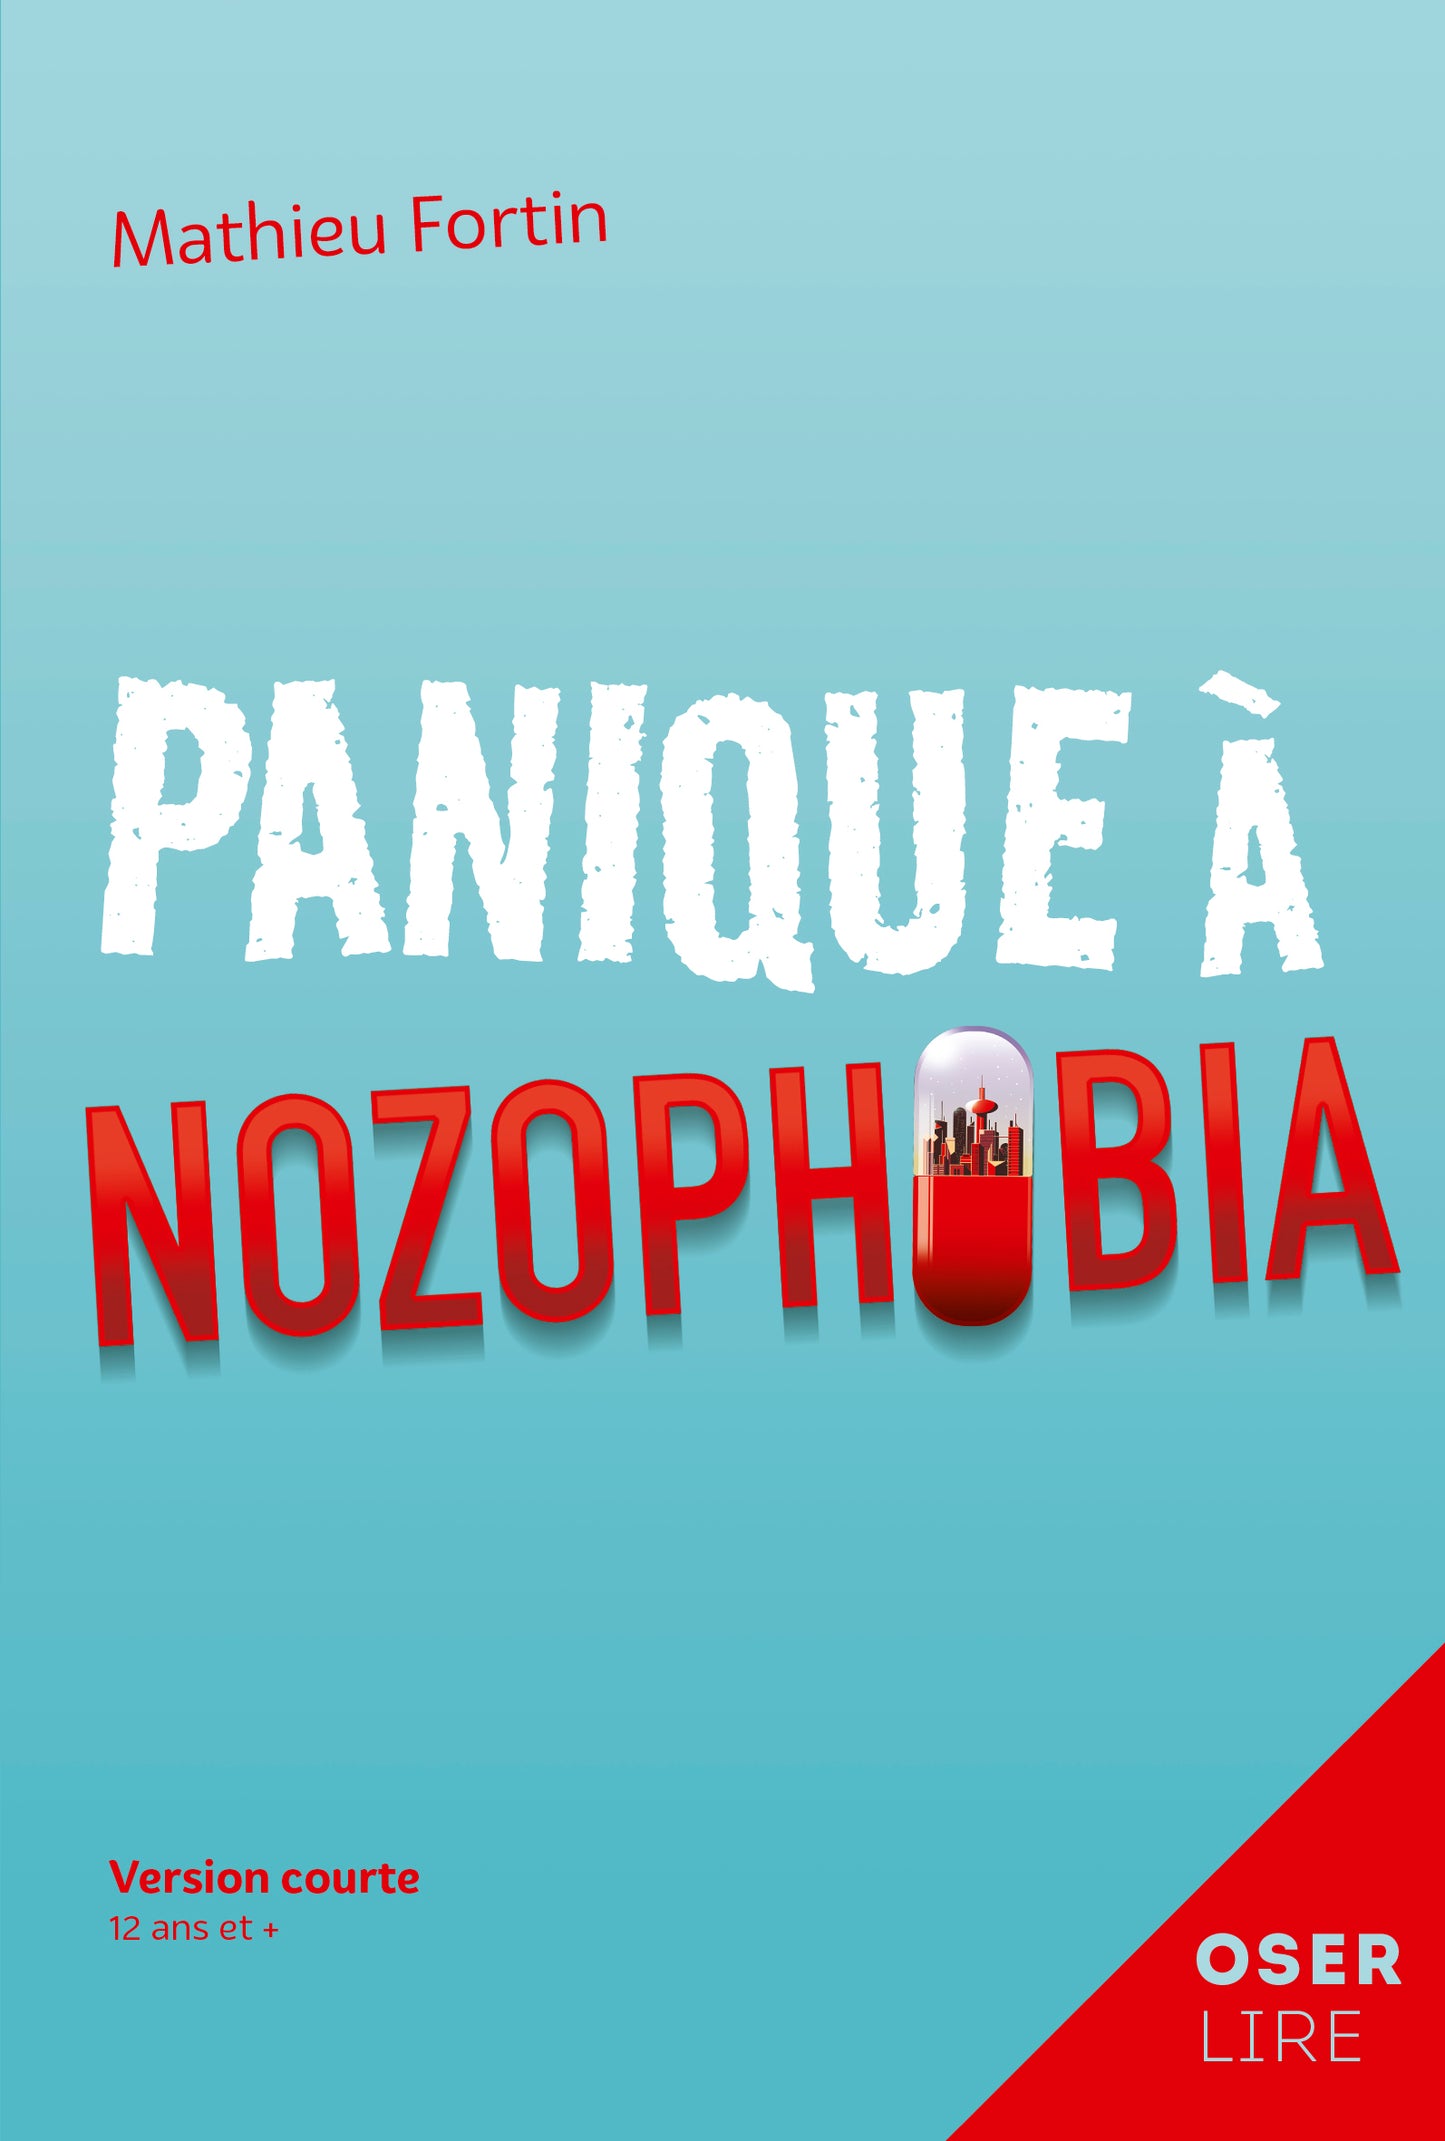 Panique à Nozophobia